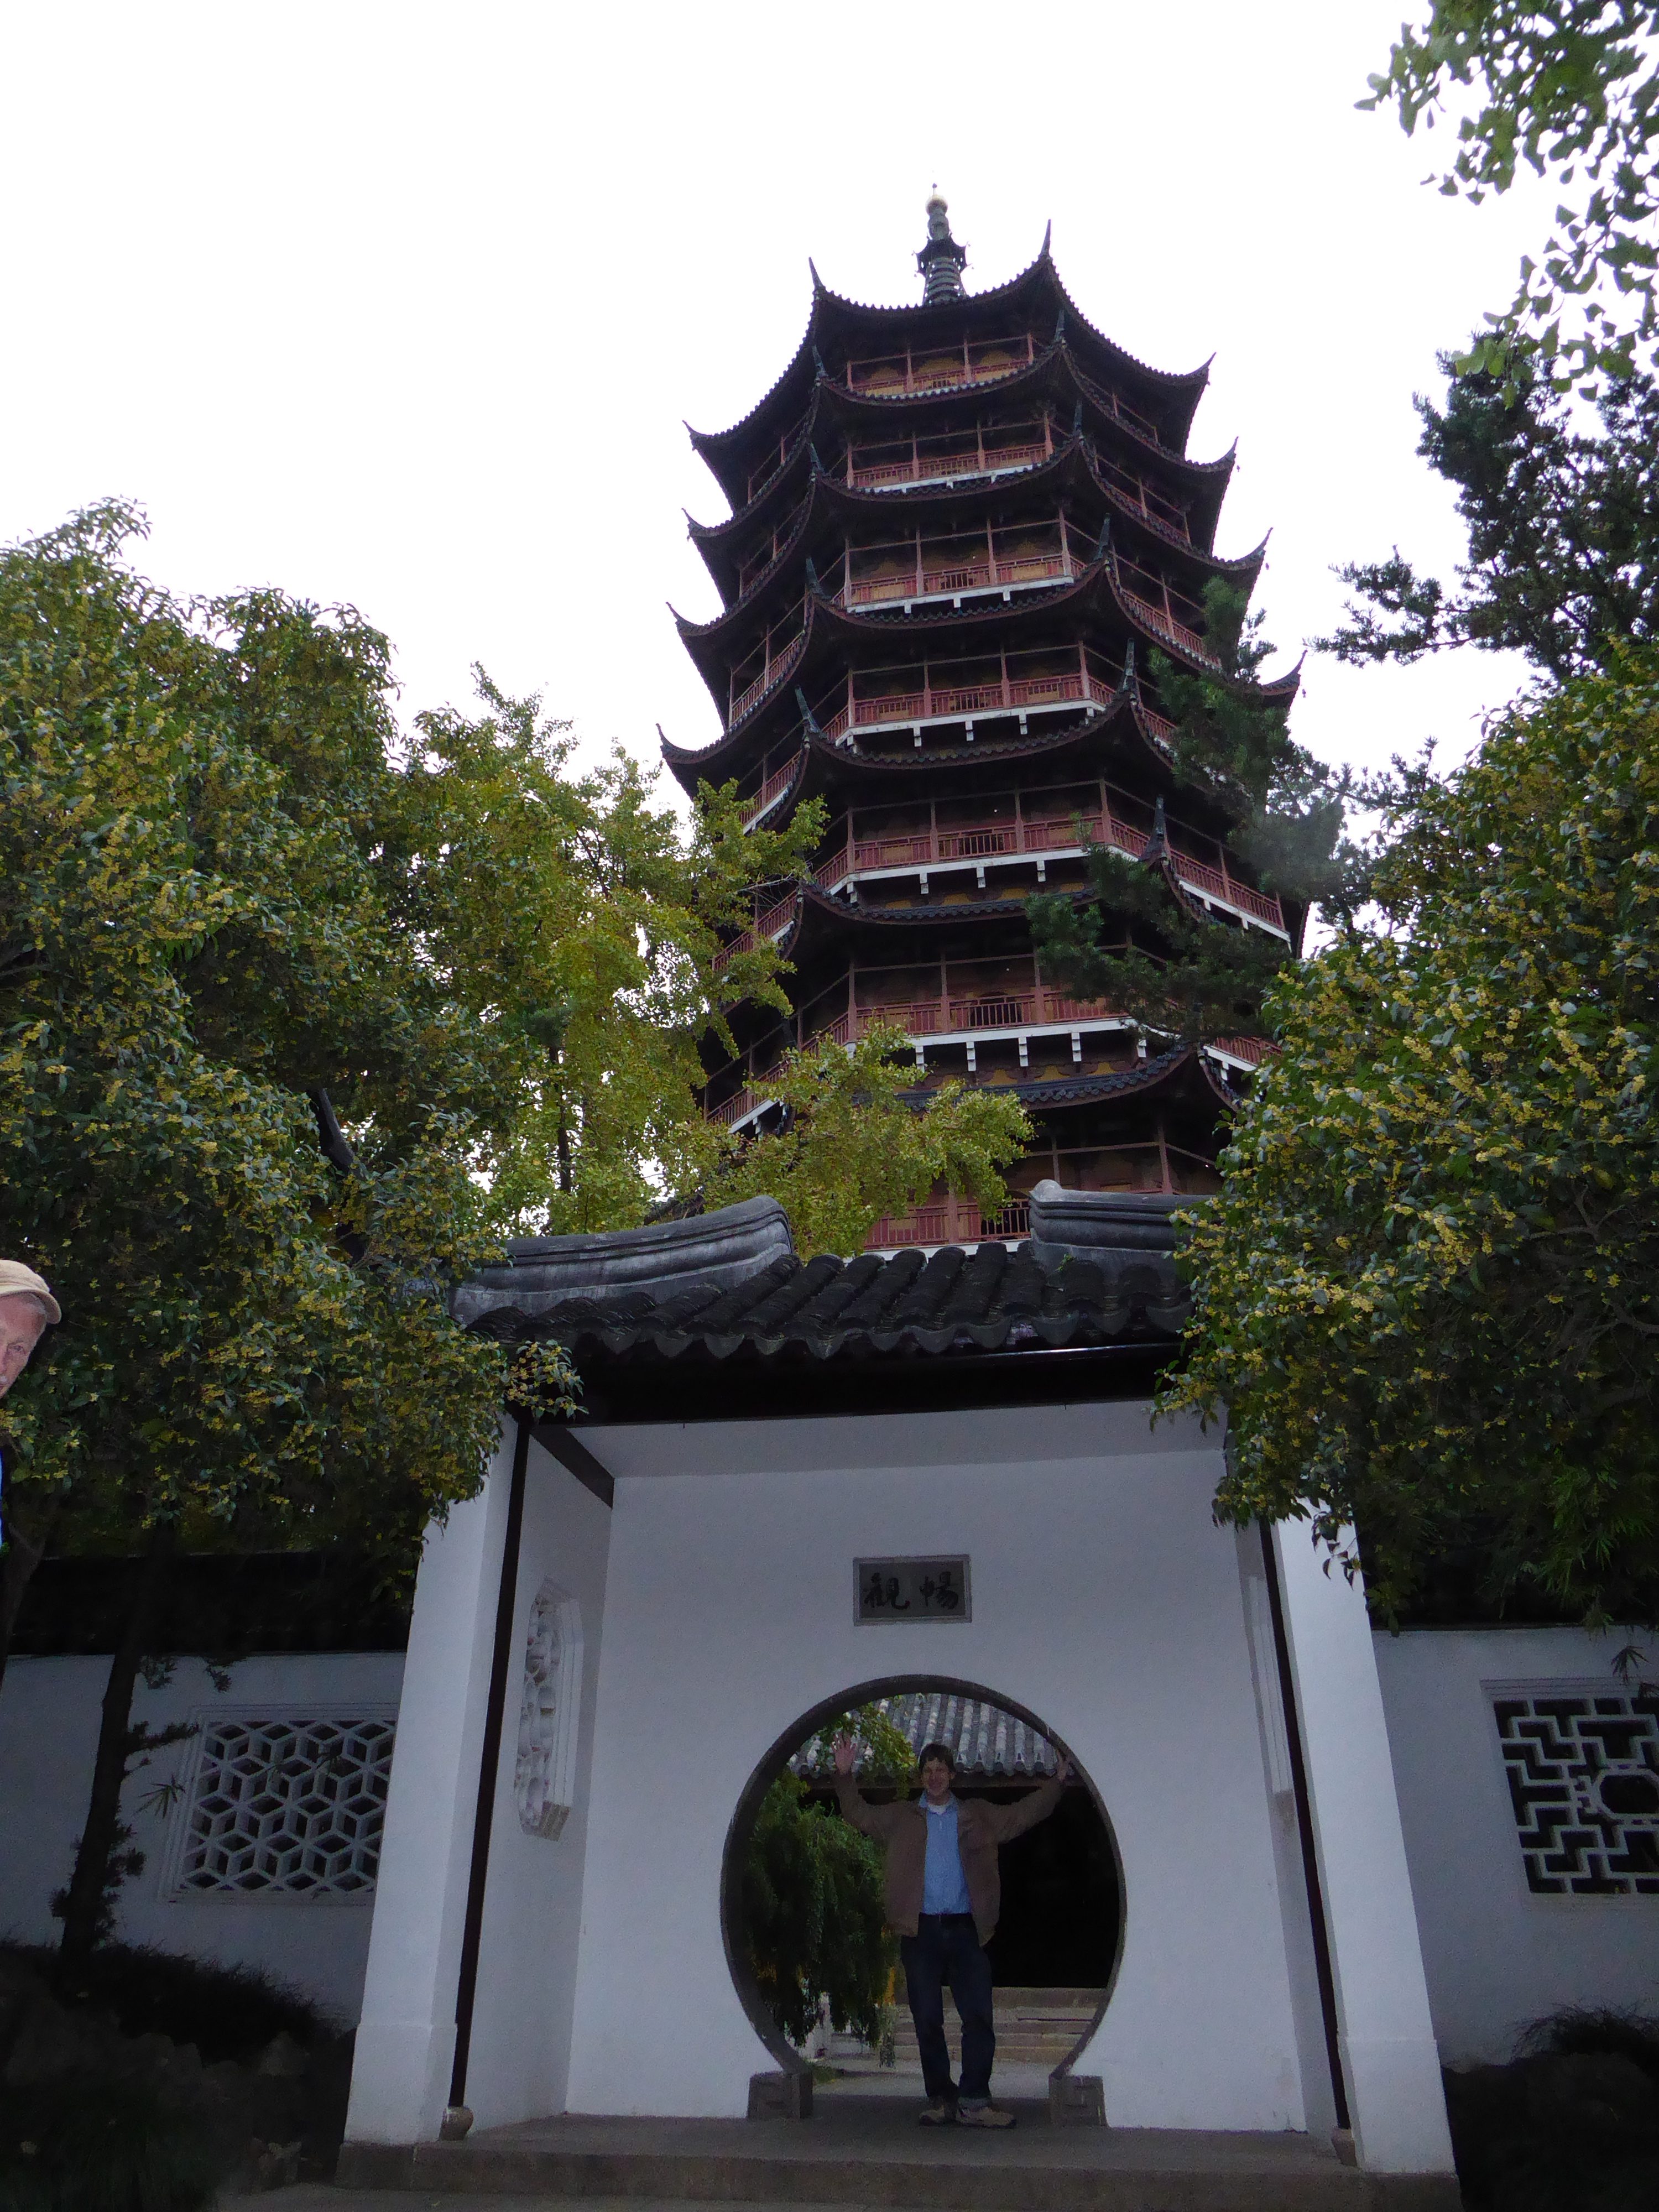 Kees bezoekt een oude pagode.